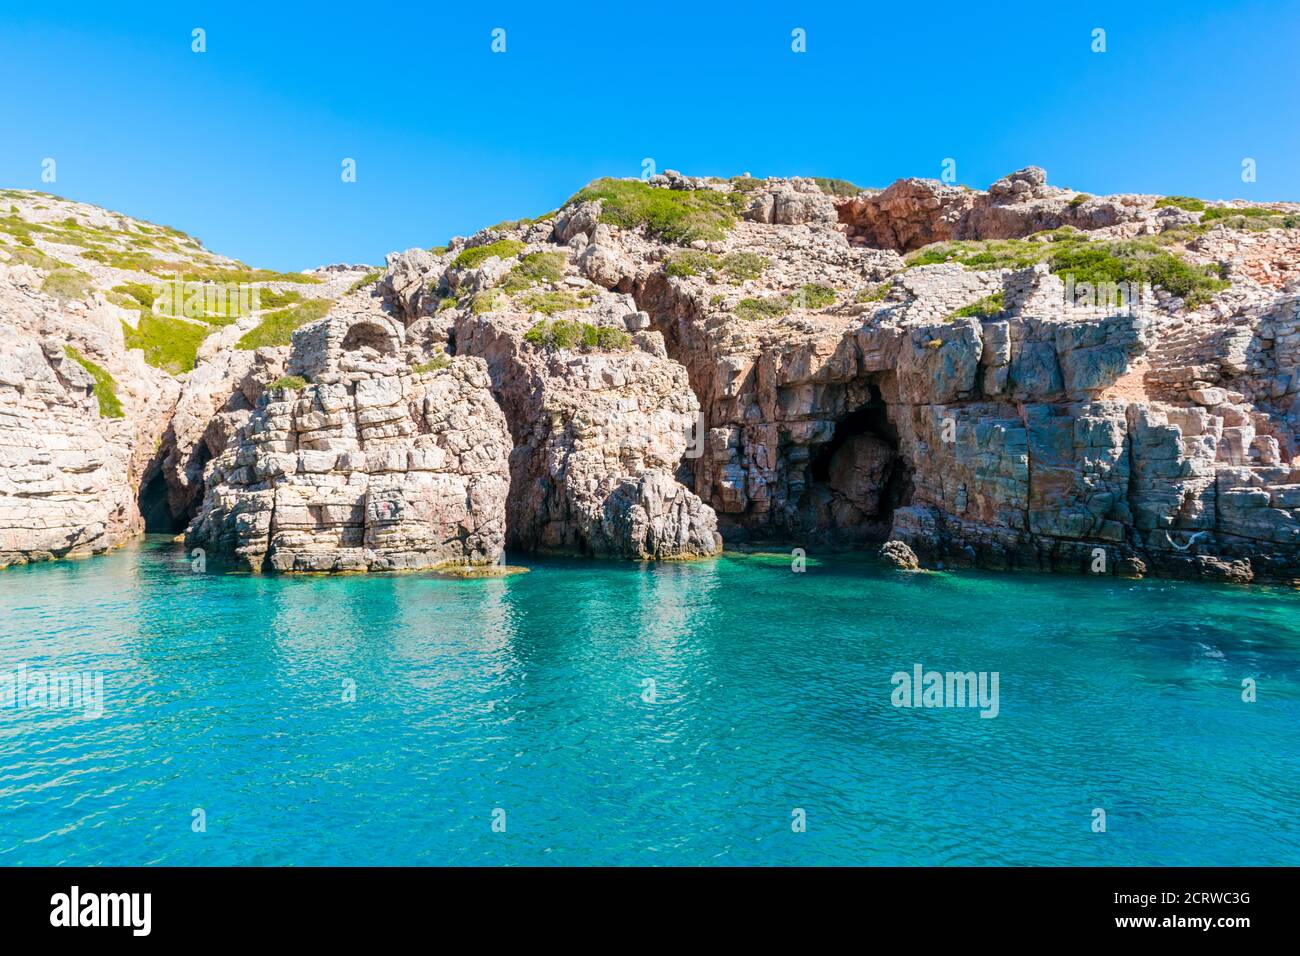 Palatia, plage Turquoise sur l'île de Saria, île de Karpathos, Grèce Banque D'Images